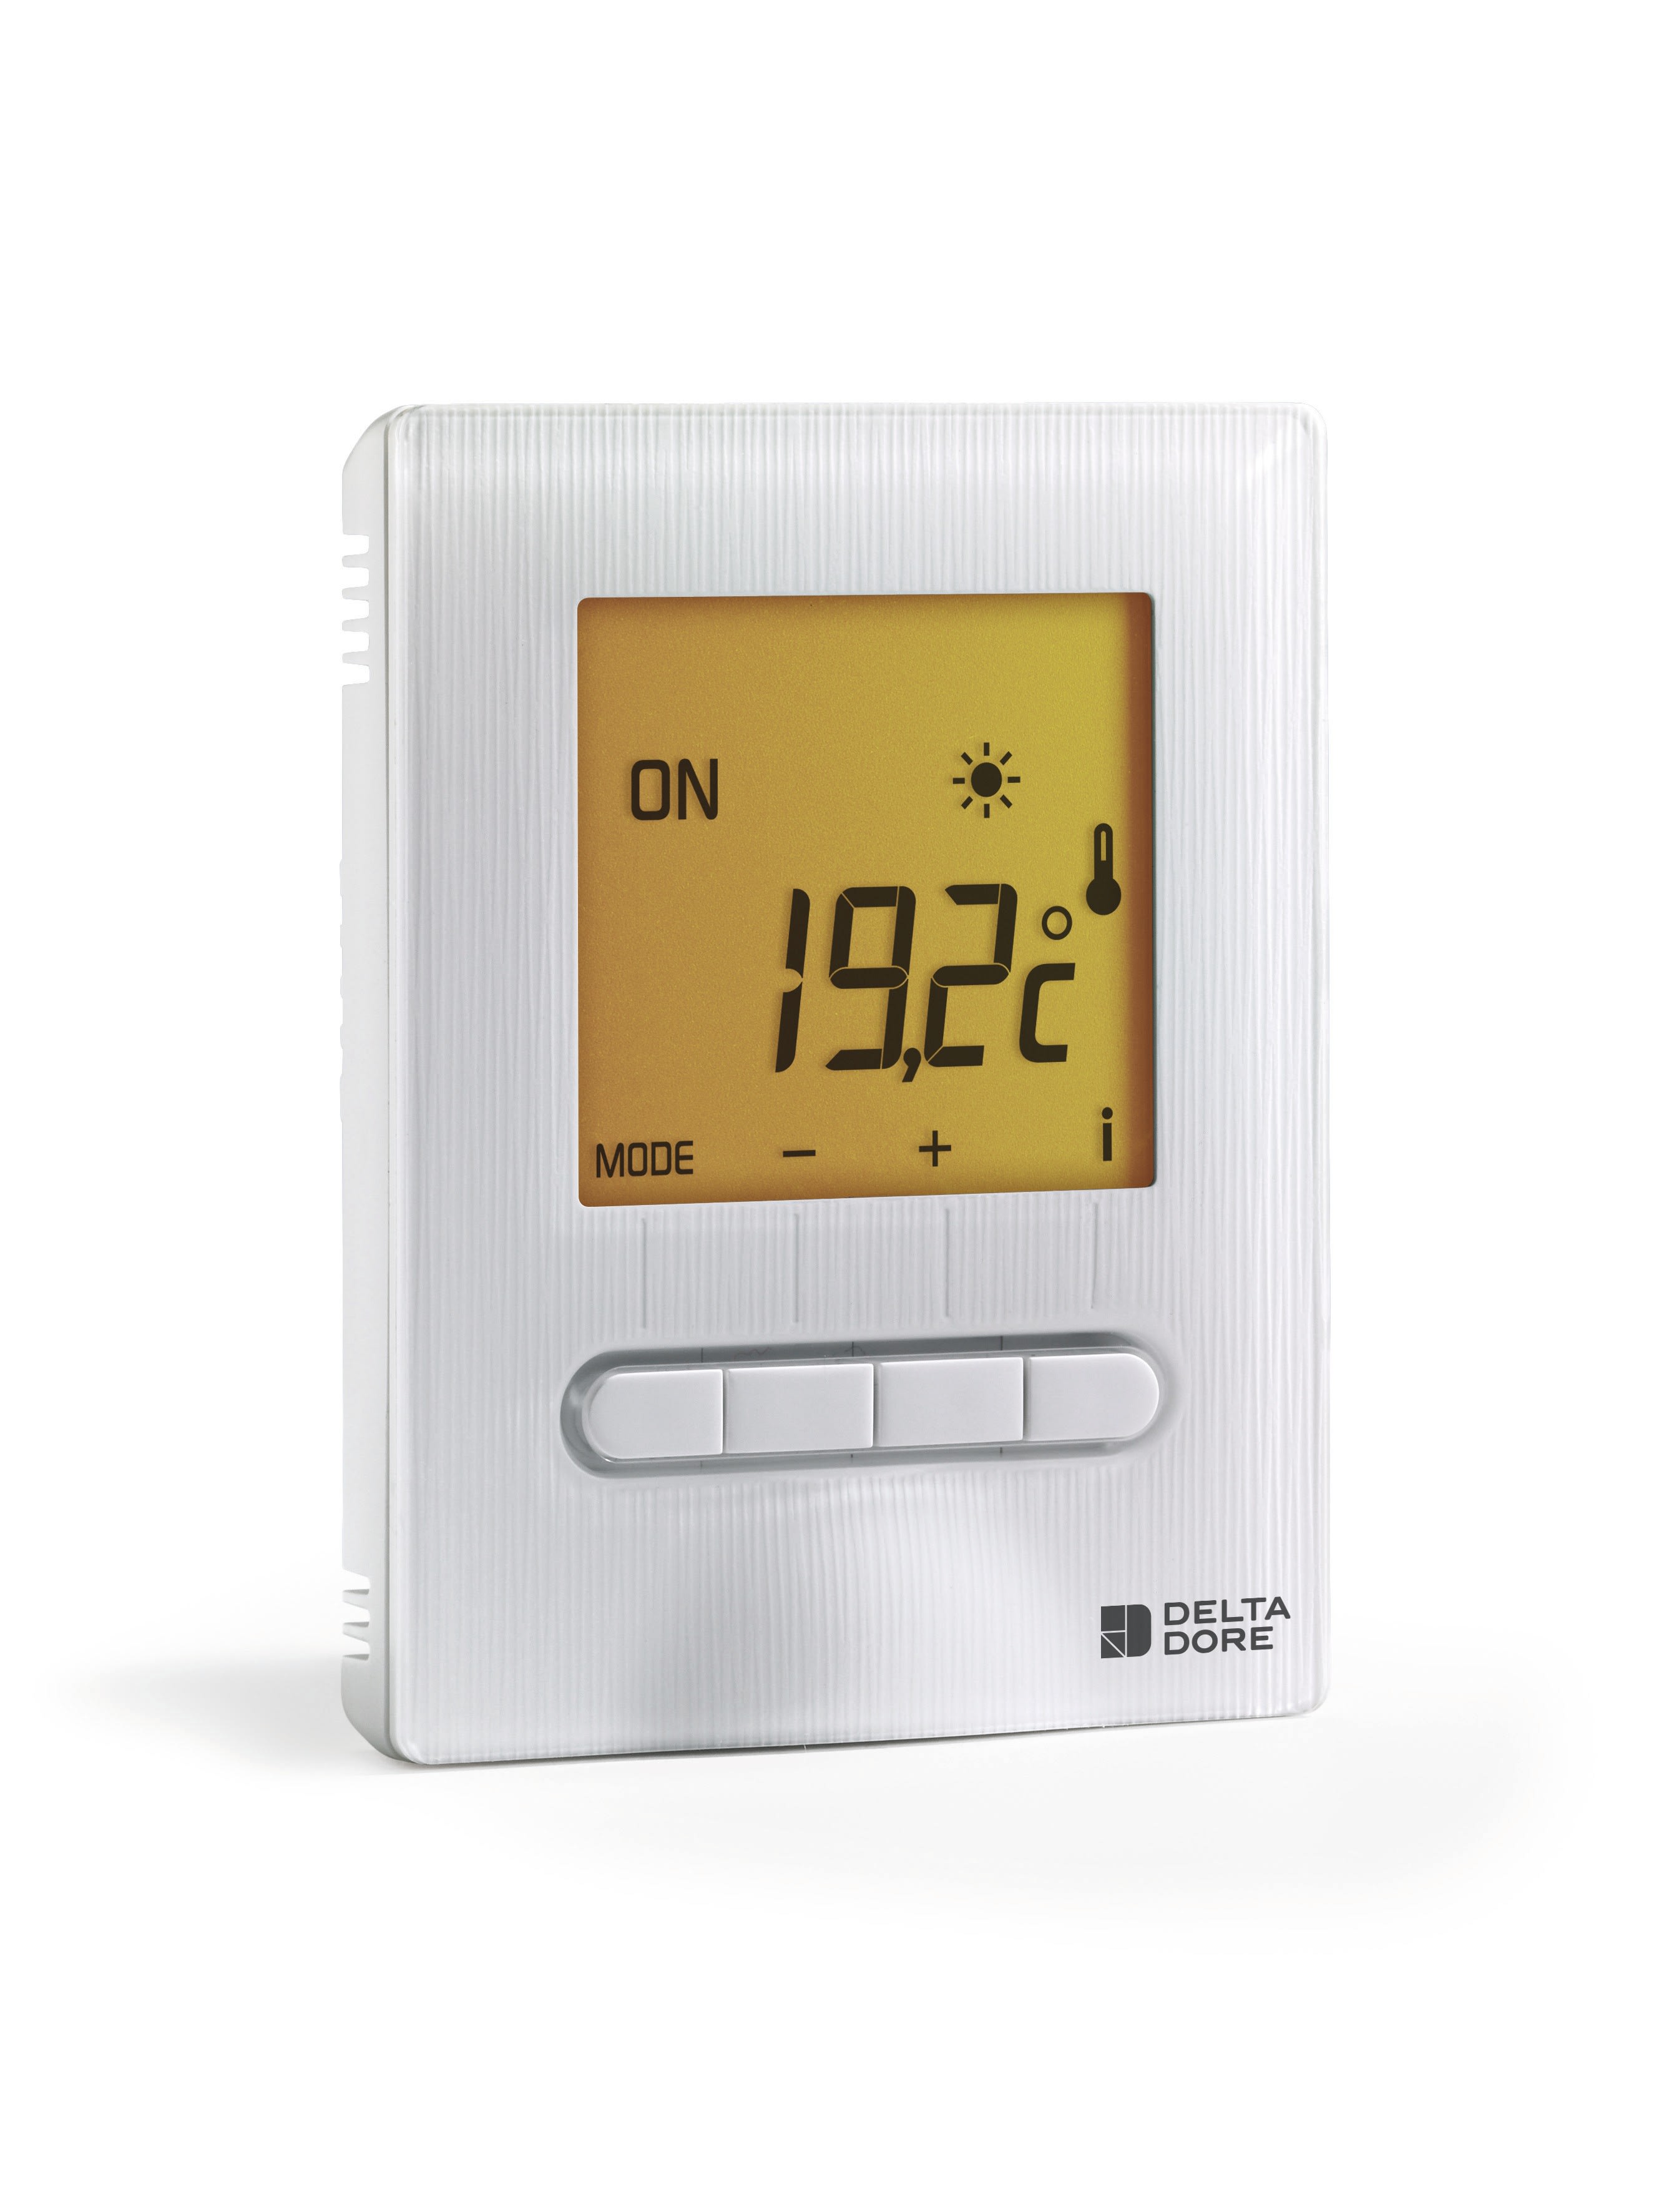 Delta Dore - Minor 12 I Thermostat d ambiance filaire semi-encastre a associer a Calybox 230